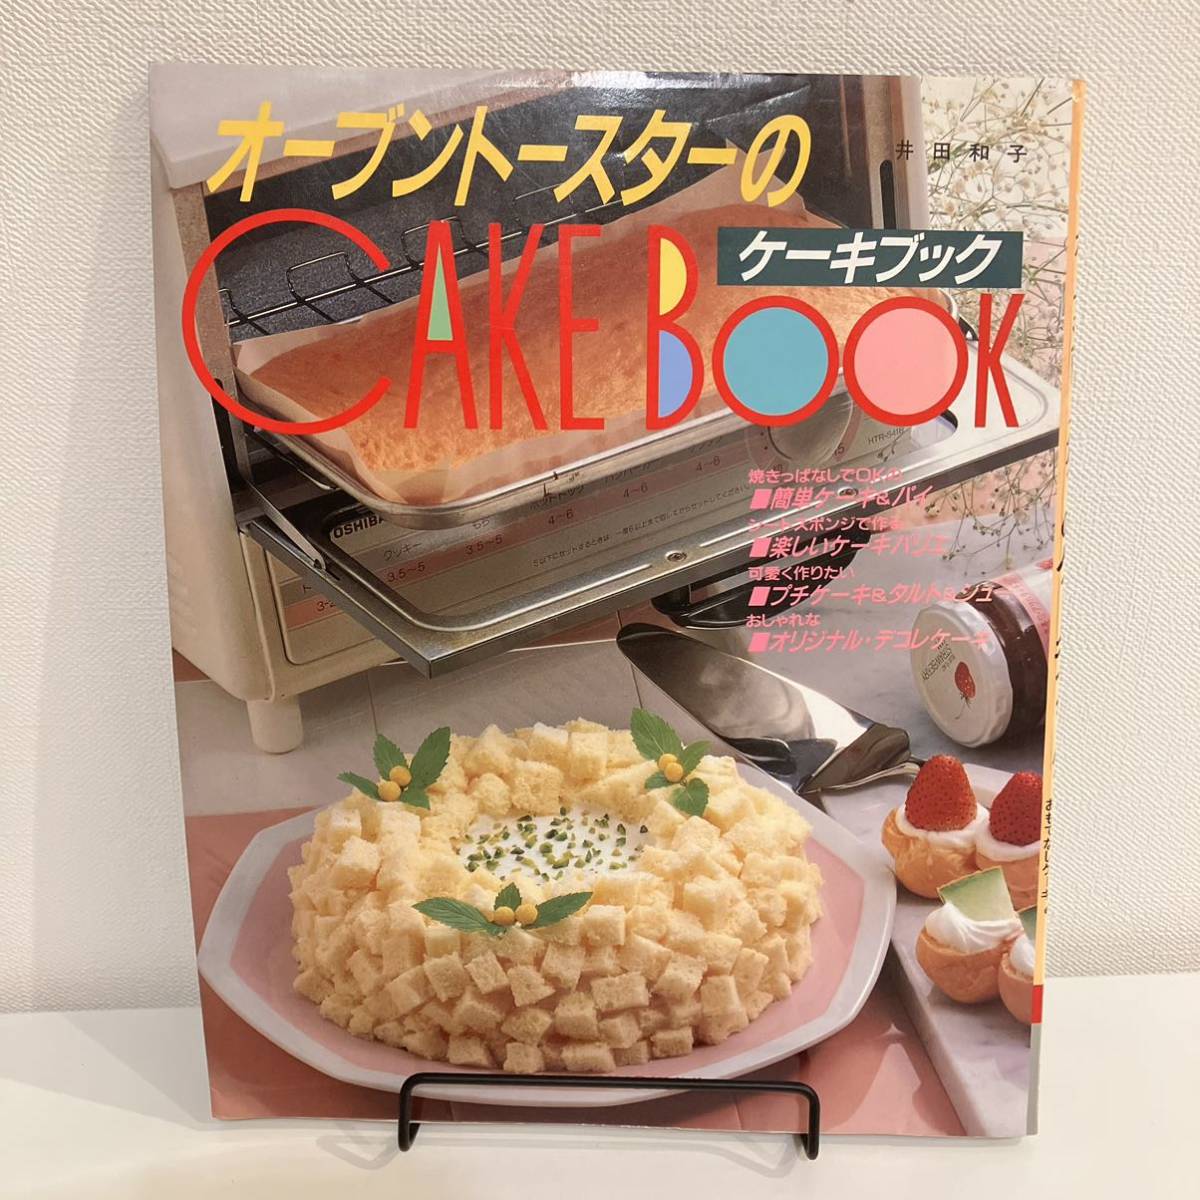 230301 retro recipe book *. rice field Kazuko [ oven toaster. cake book ]1995 year 25..... .. corporation * confection making recipe book